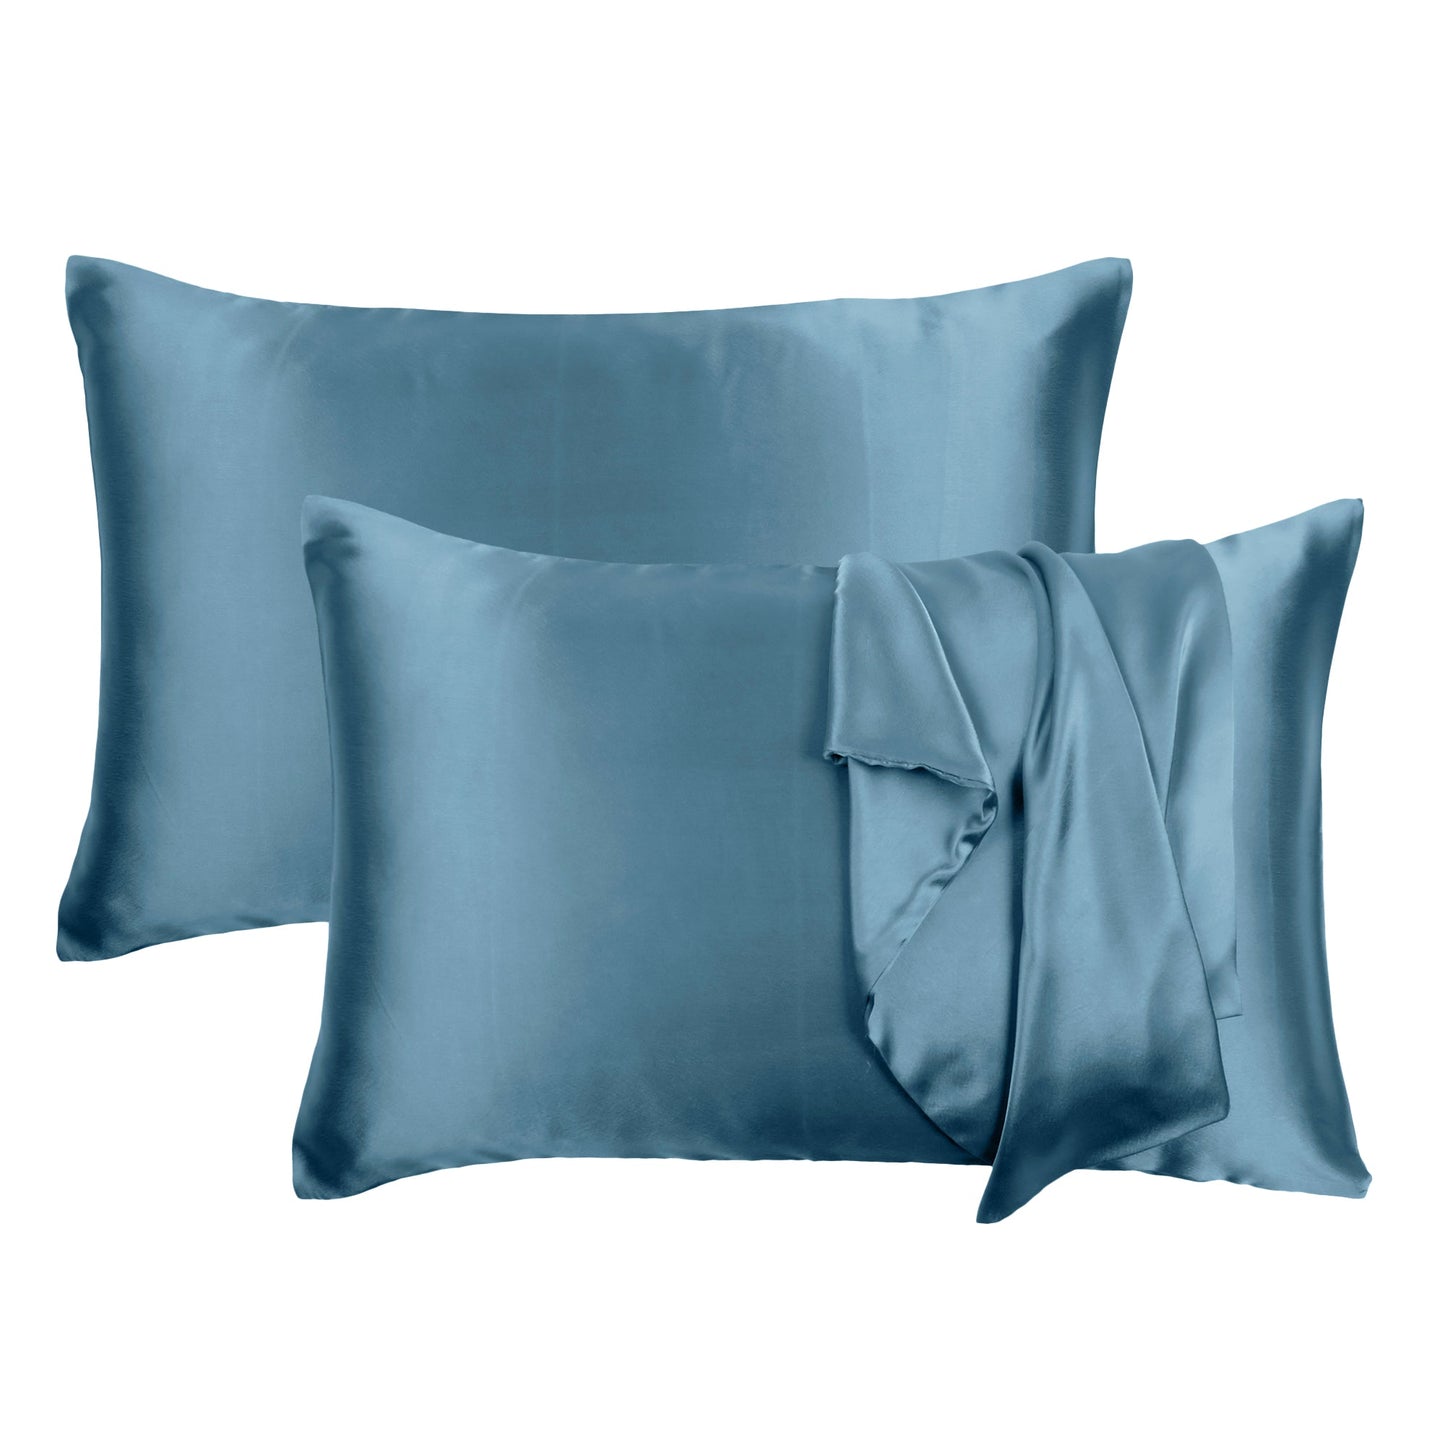 Luxury Soft Plain Satin Silk Pillowcases in Set of 2 - Quiet Harbor